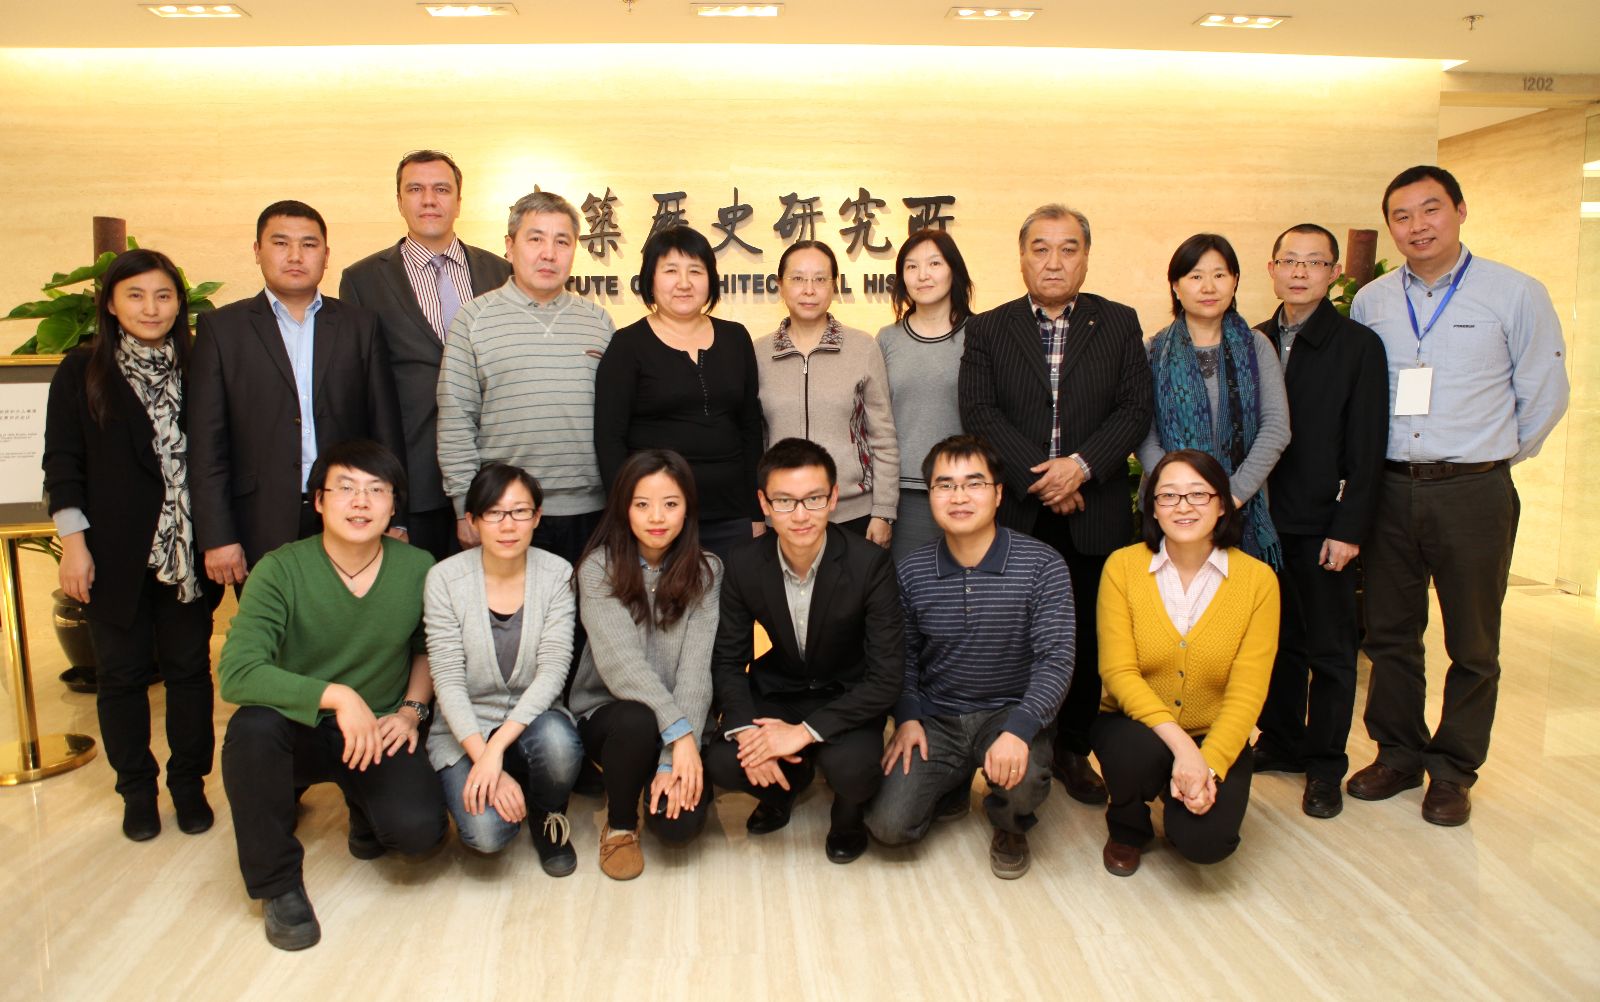  “丝绸之路：起始段和天山廊道的路网”工作组第四次会议在北京召开